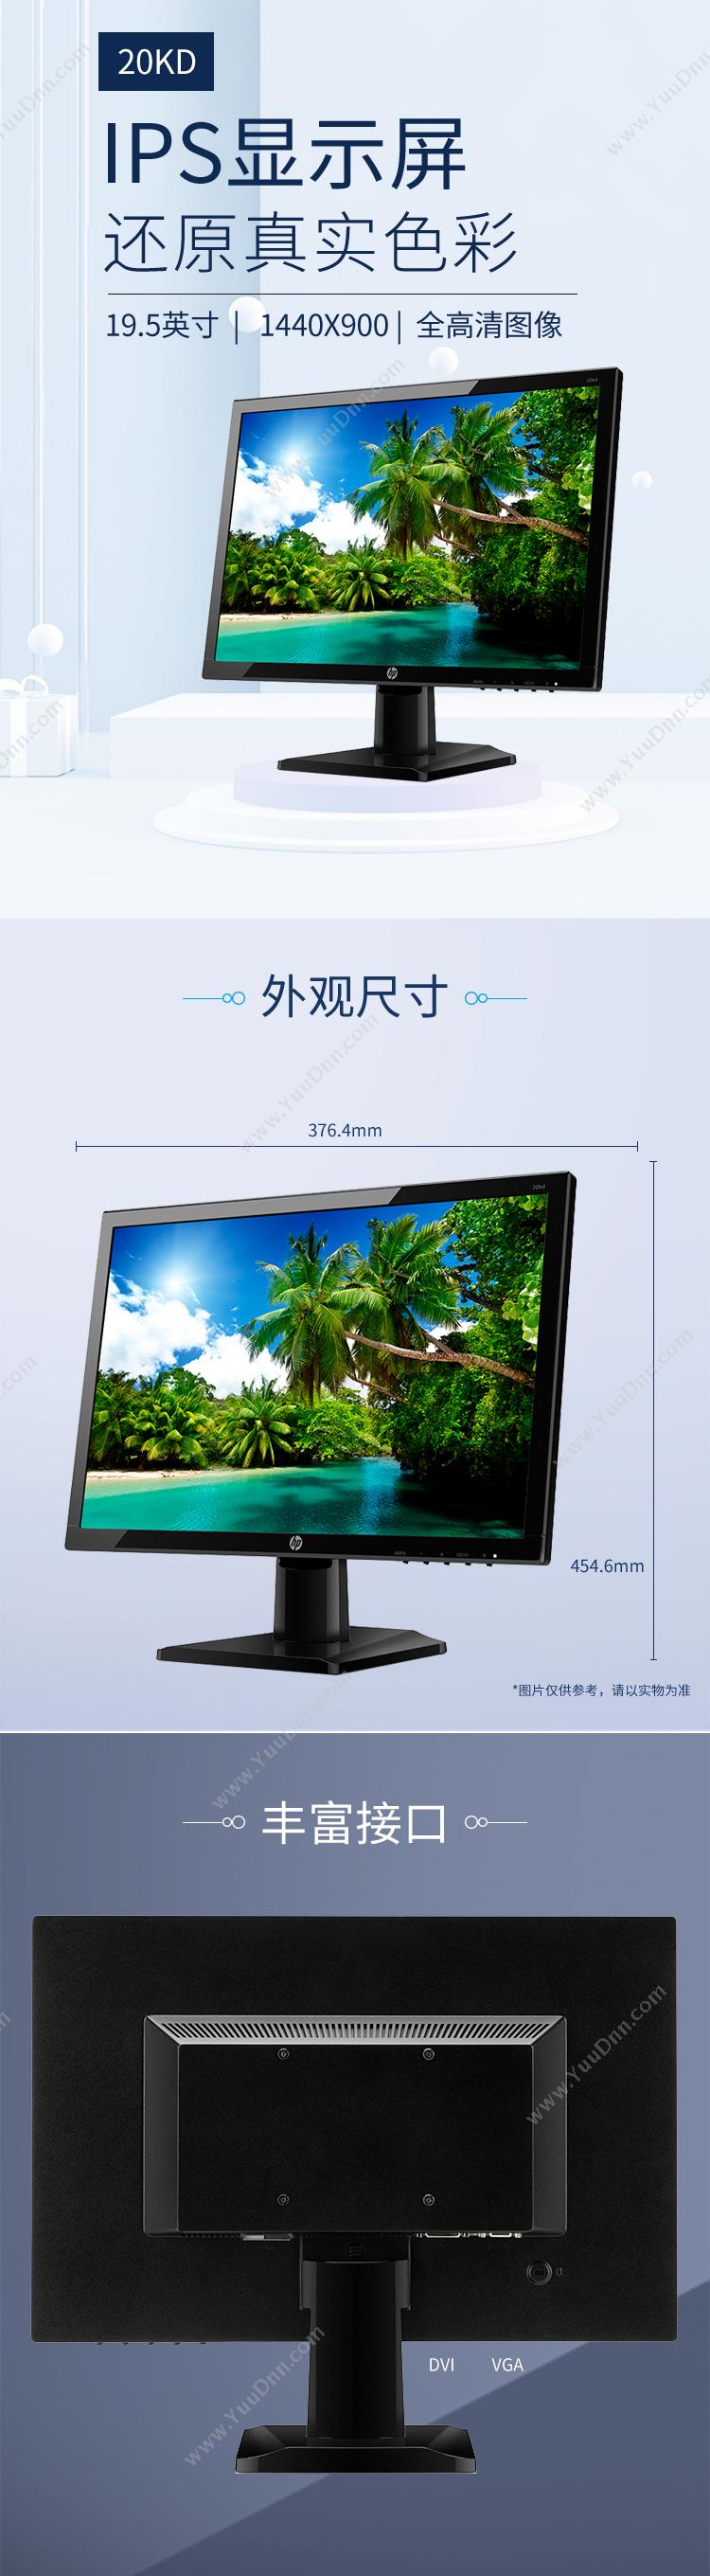 惠普 HP 20kd 19.5英寸显示器 IPS面板 1440*900 VGA/DVI接口 VGA线 显示器